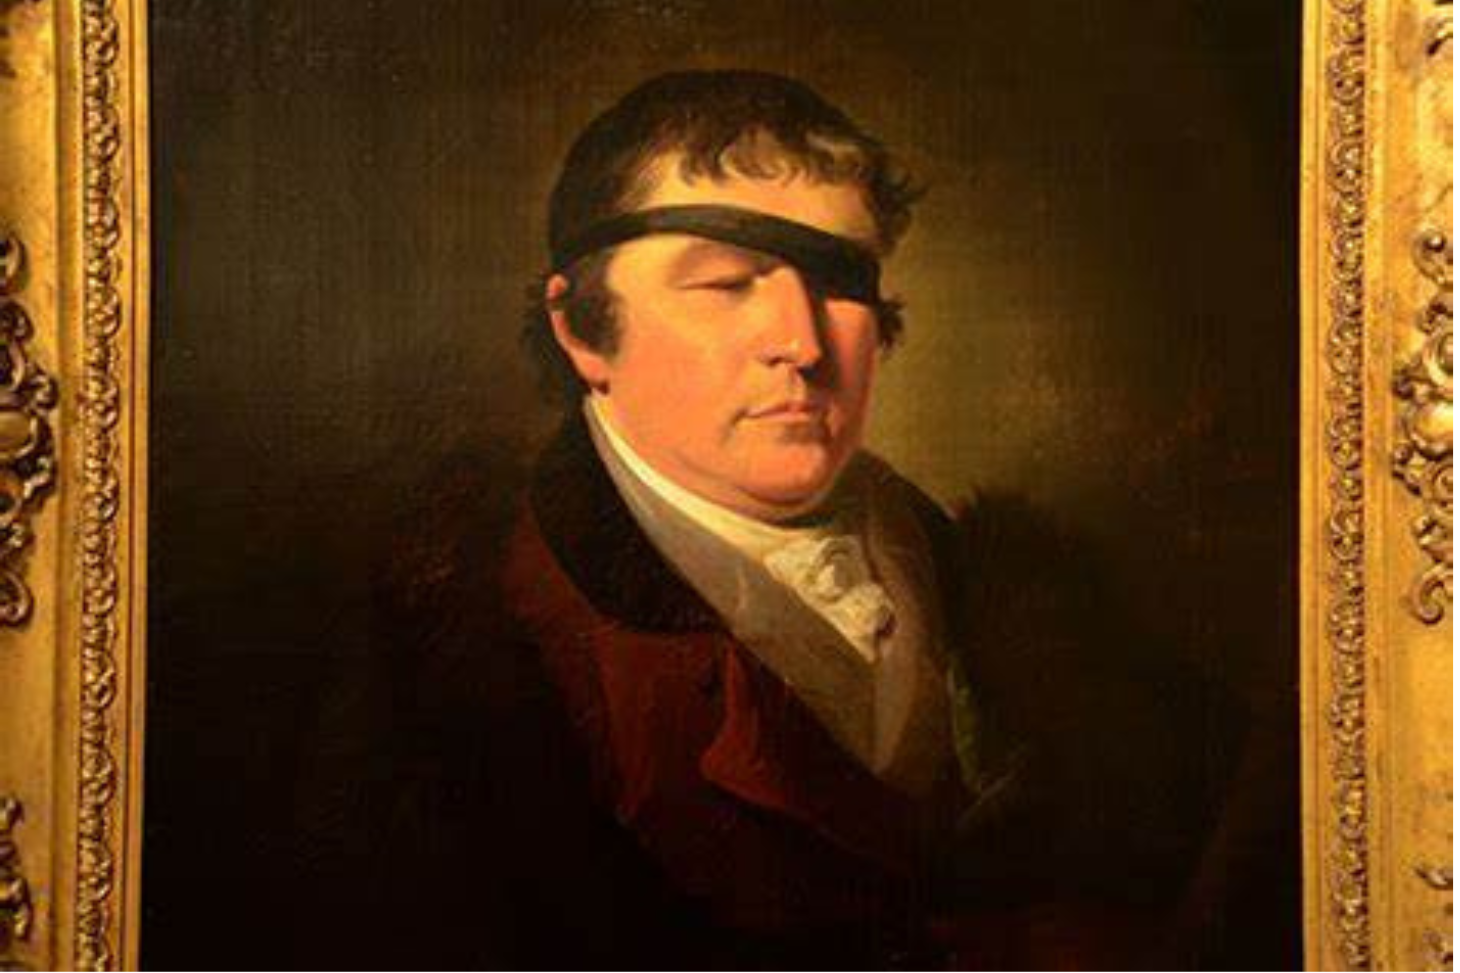 Edward Rushton - The Blind Reformer